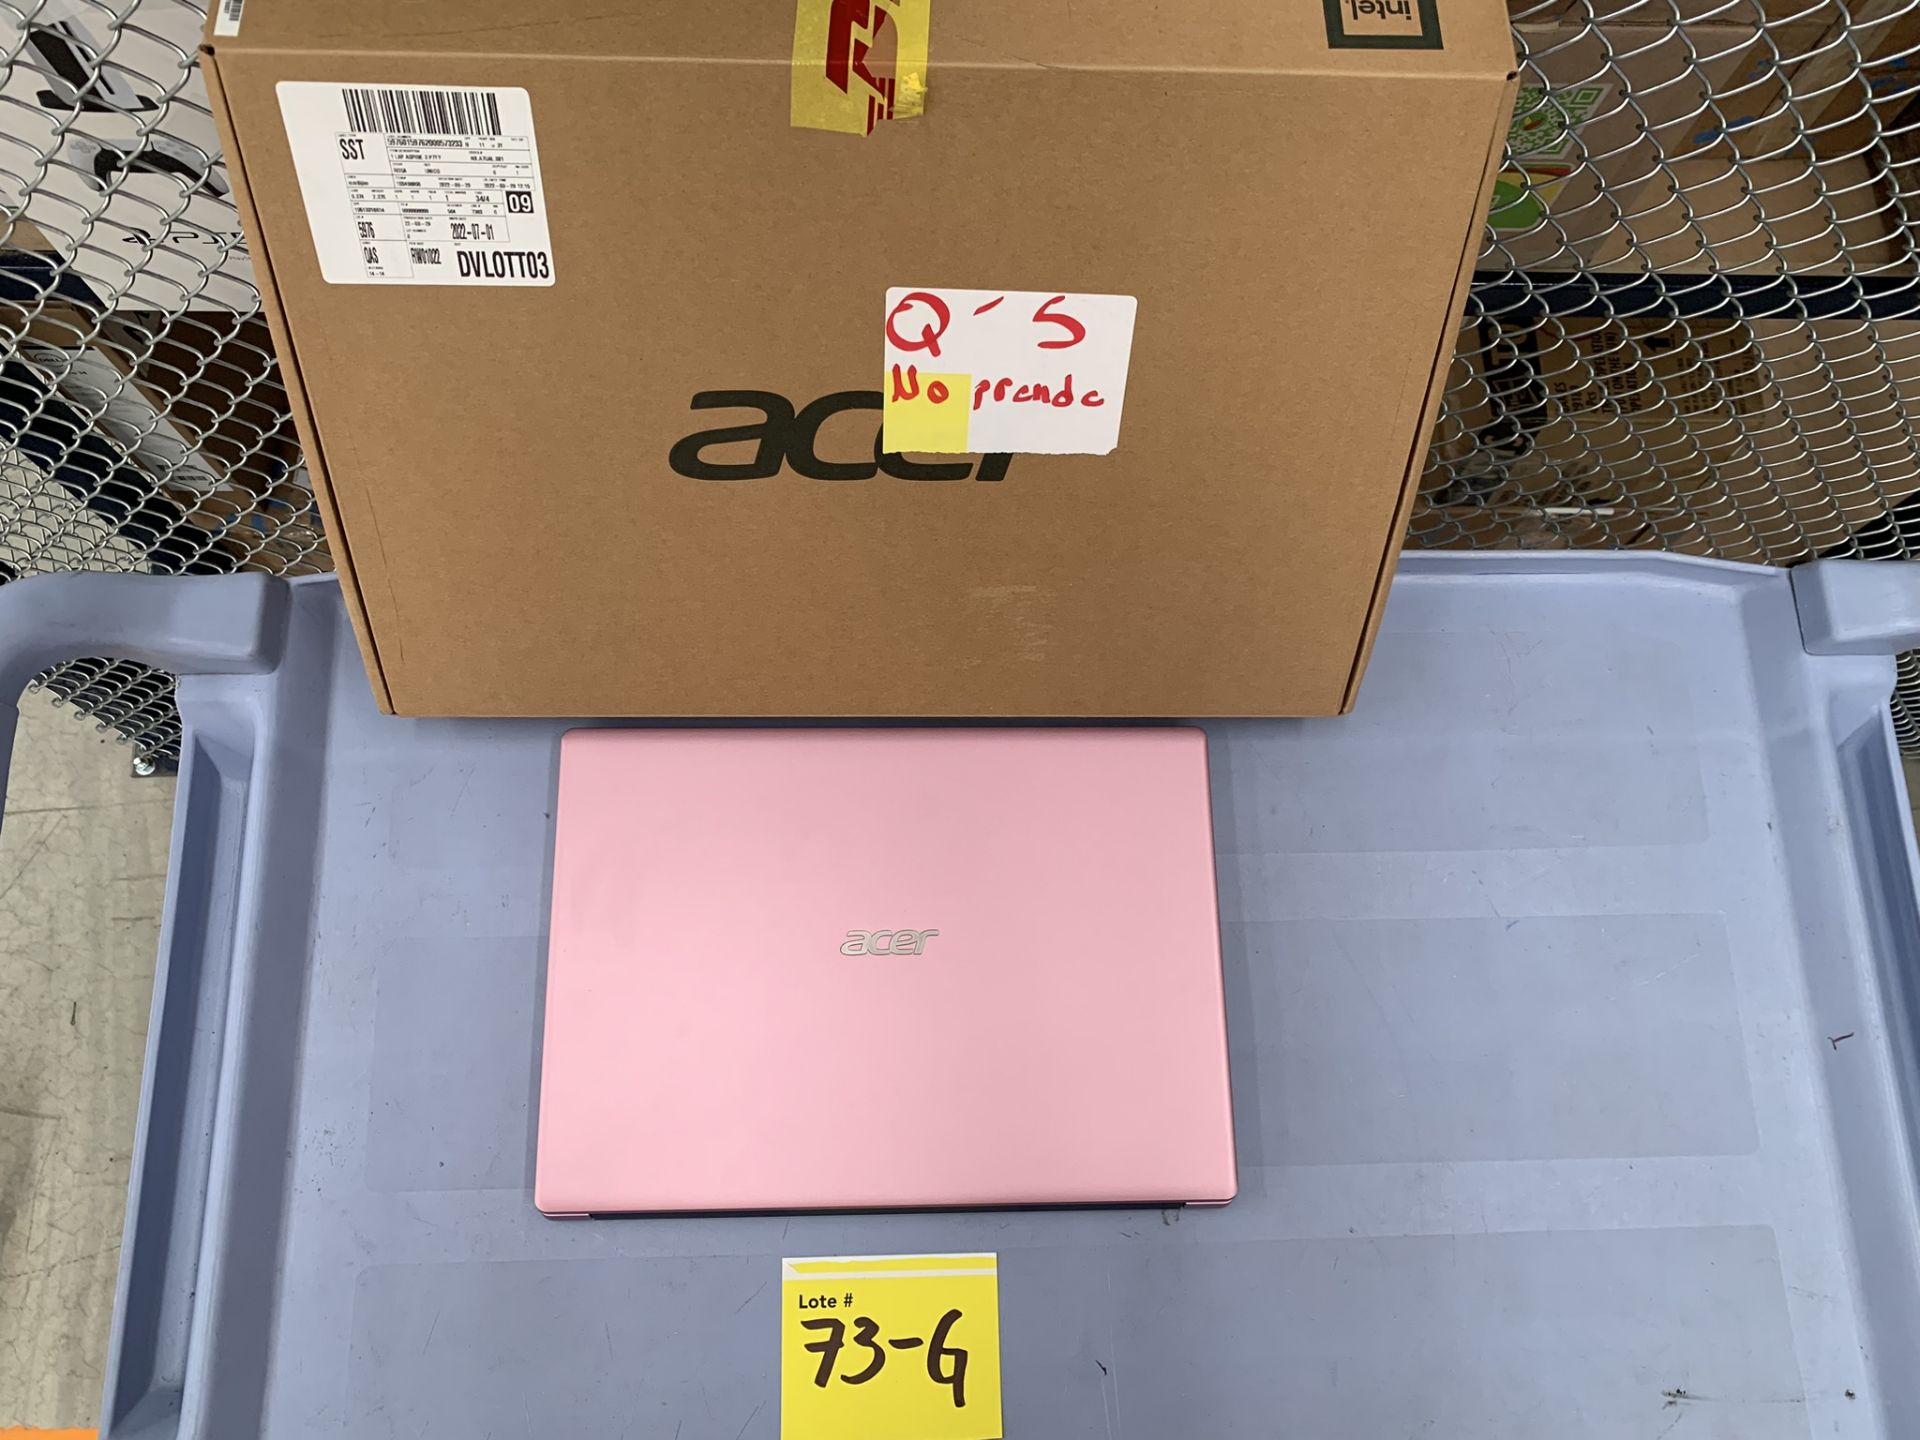 Lote De 2 Laptop Contiene: 1 Laptop Marca Acer Modelo N20Q1, Serie 467600, Procesador Procesado - Image 10 of 14